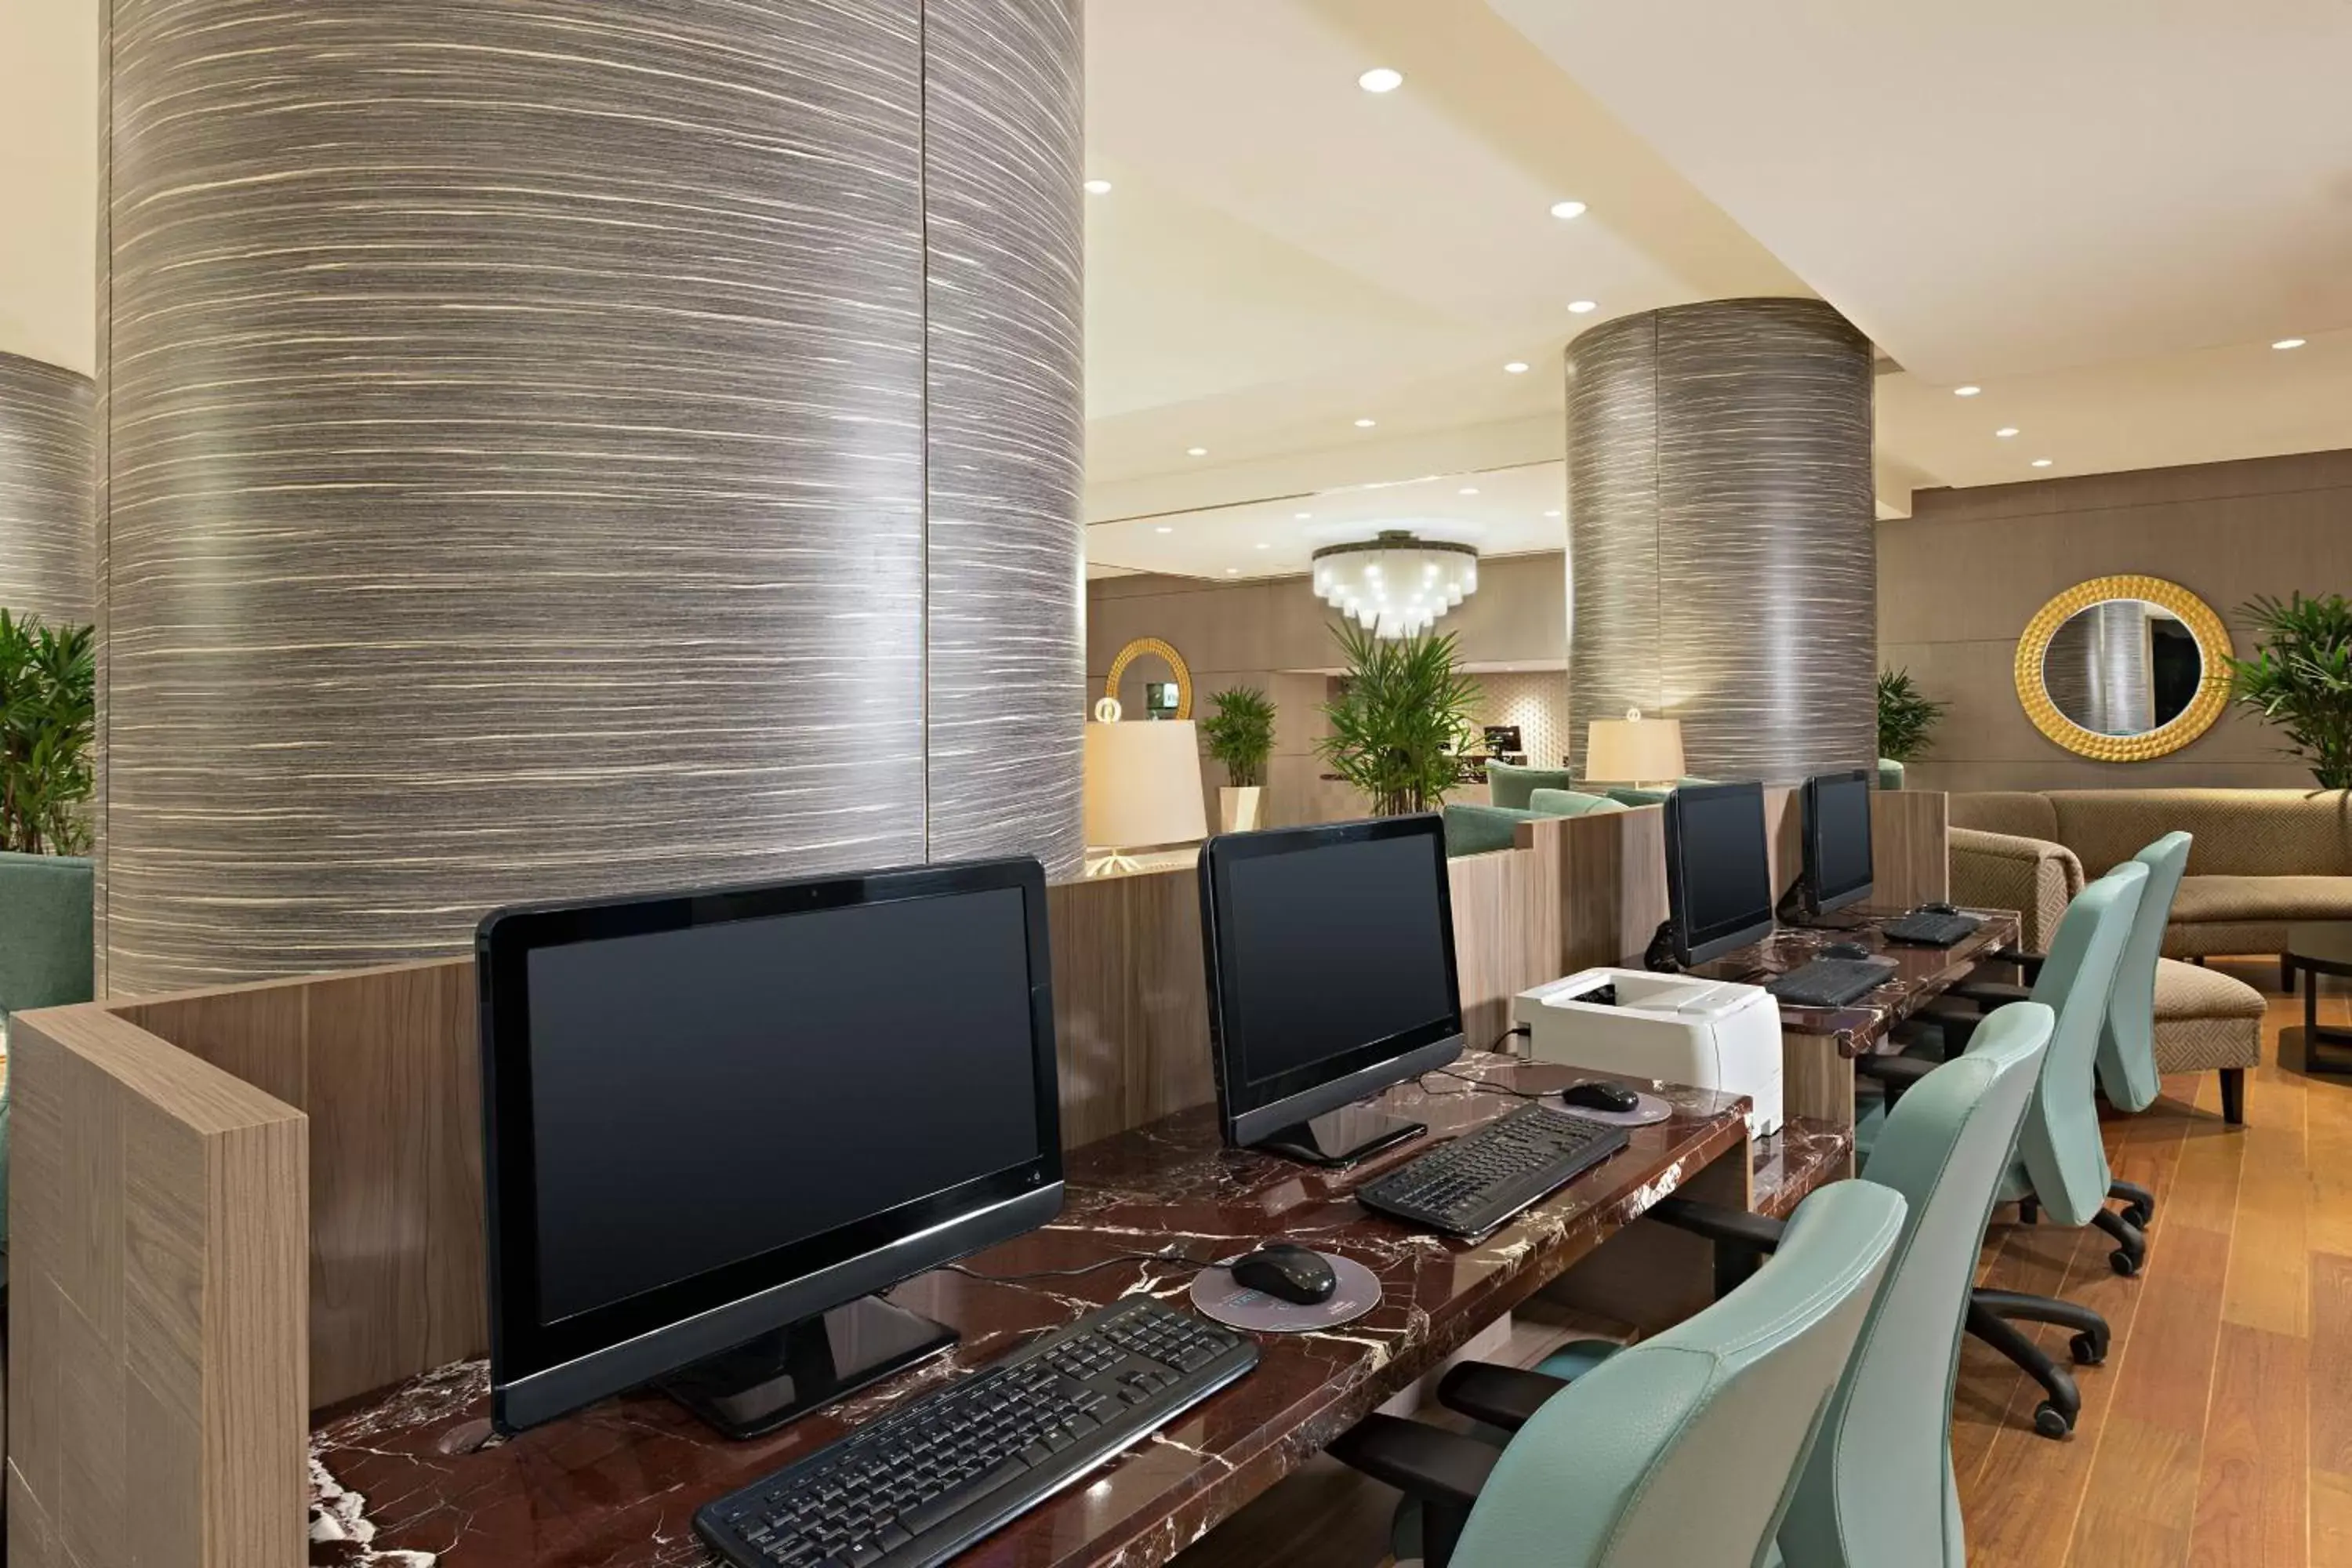 Lobby or reception in Sheraton Grand Rio Hotel & Resort